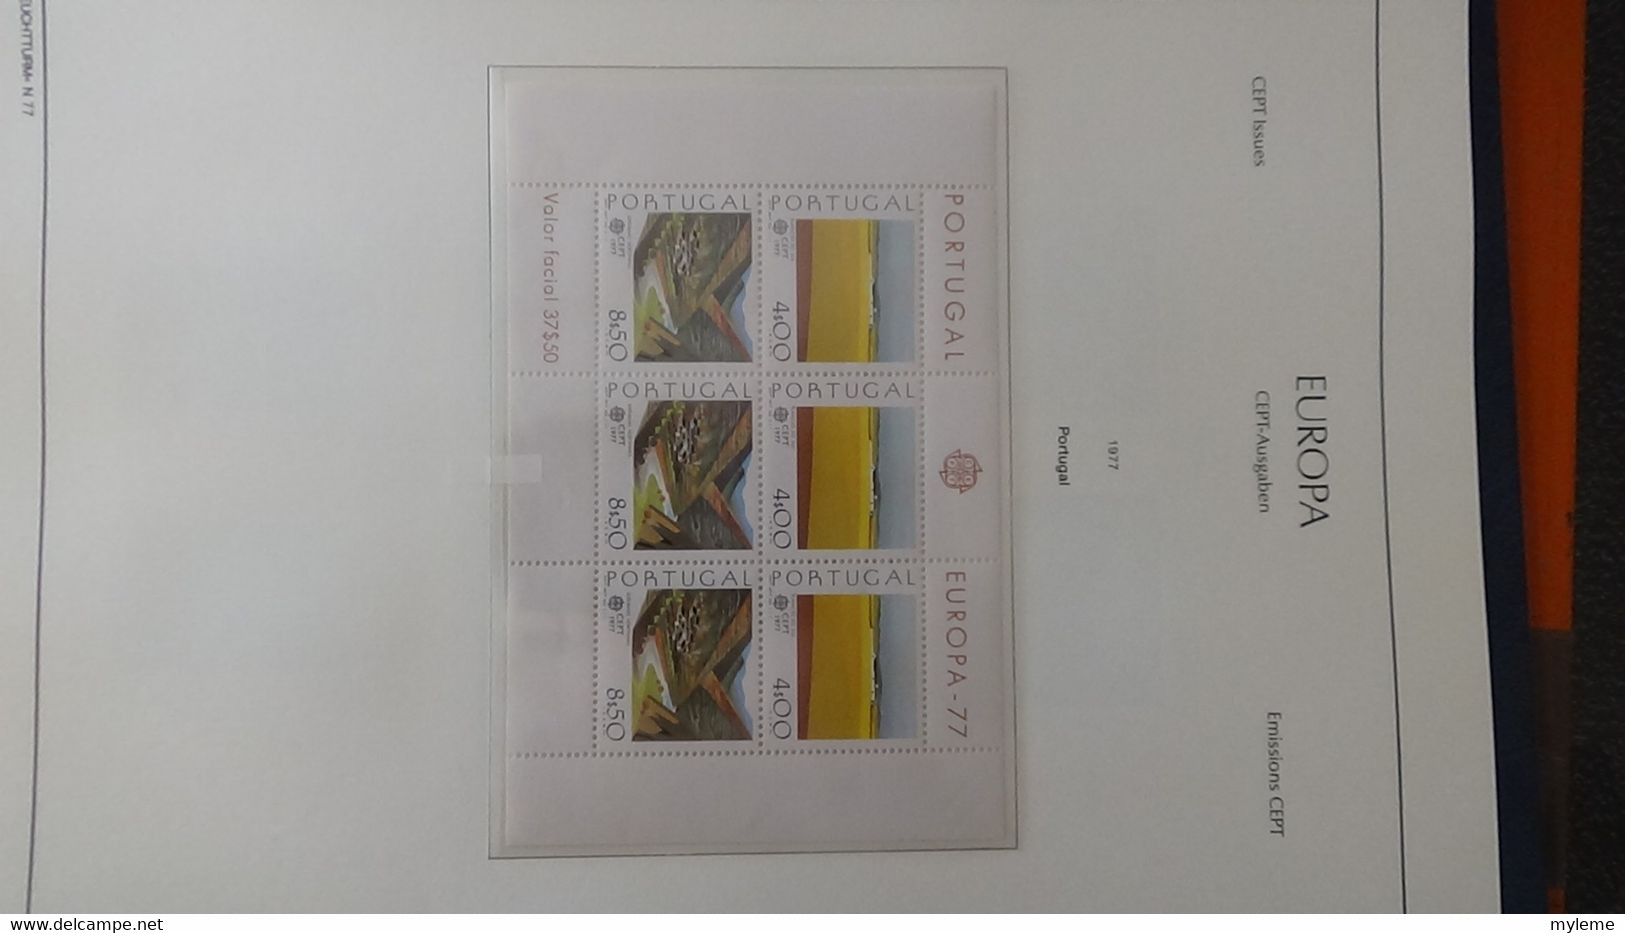 Z156 Très belle collection Europa en reliure LEUCHTTURM timbres et blocs ** en 4 volumes. Volume 1/4 de 1957 à 1977